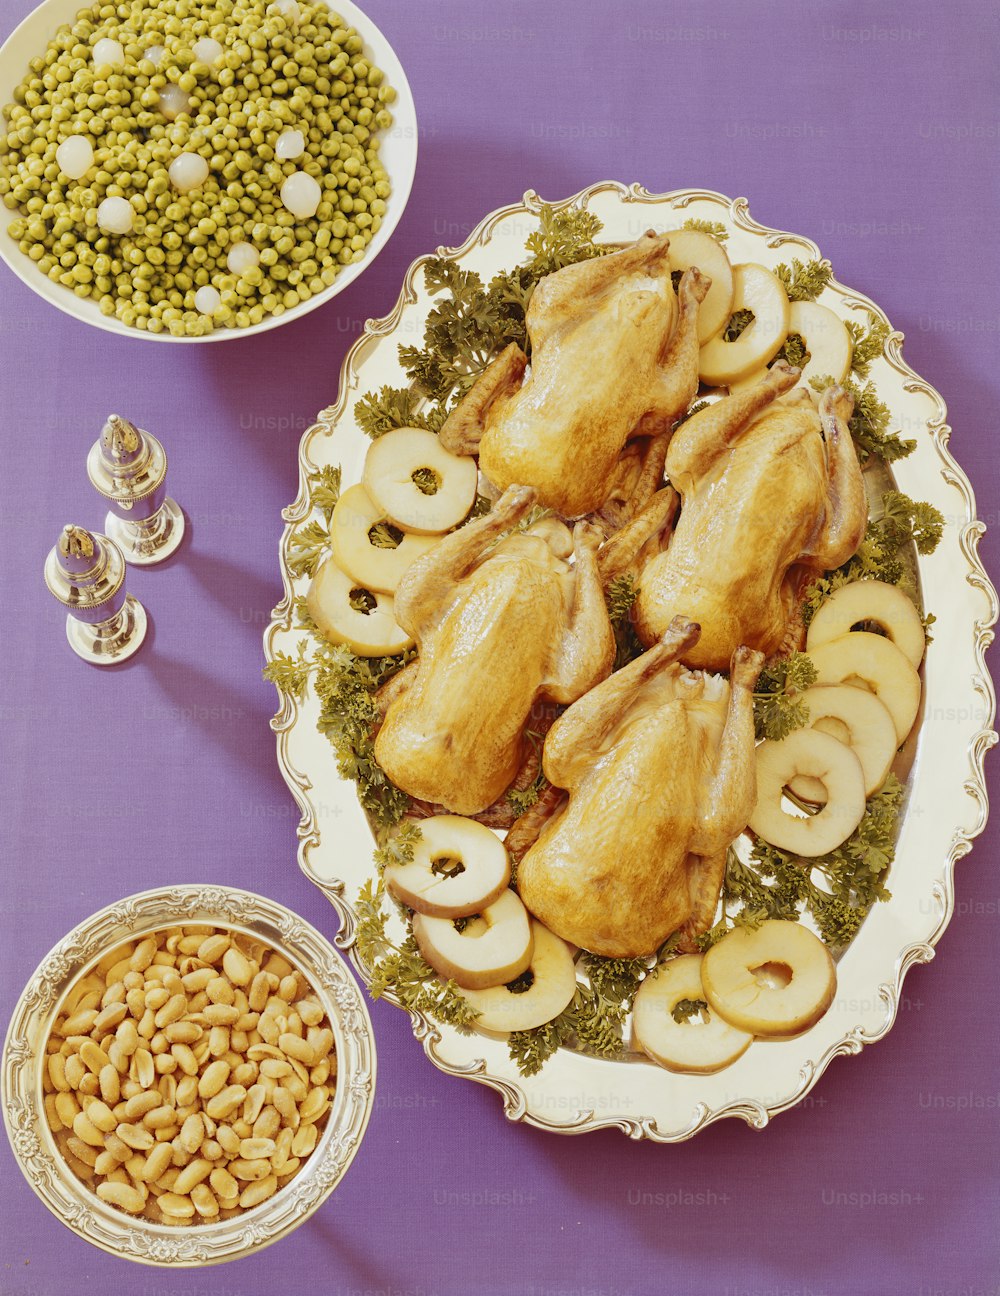 보라색 테이블에 닭고기, 버섯, 완두콩, 완두콩 접시